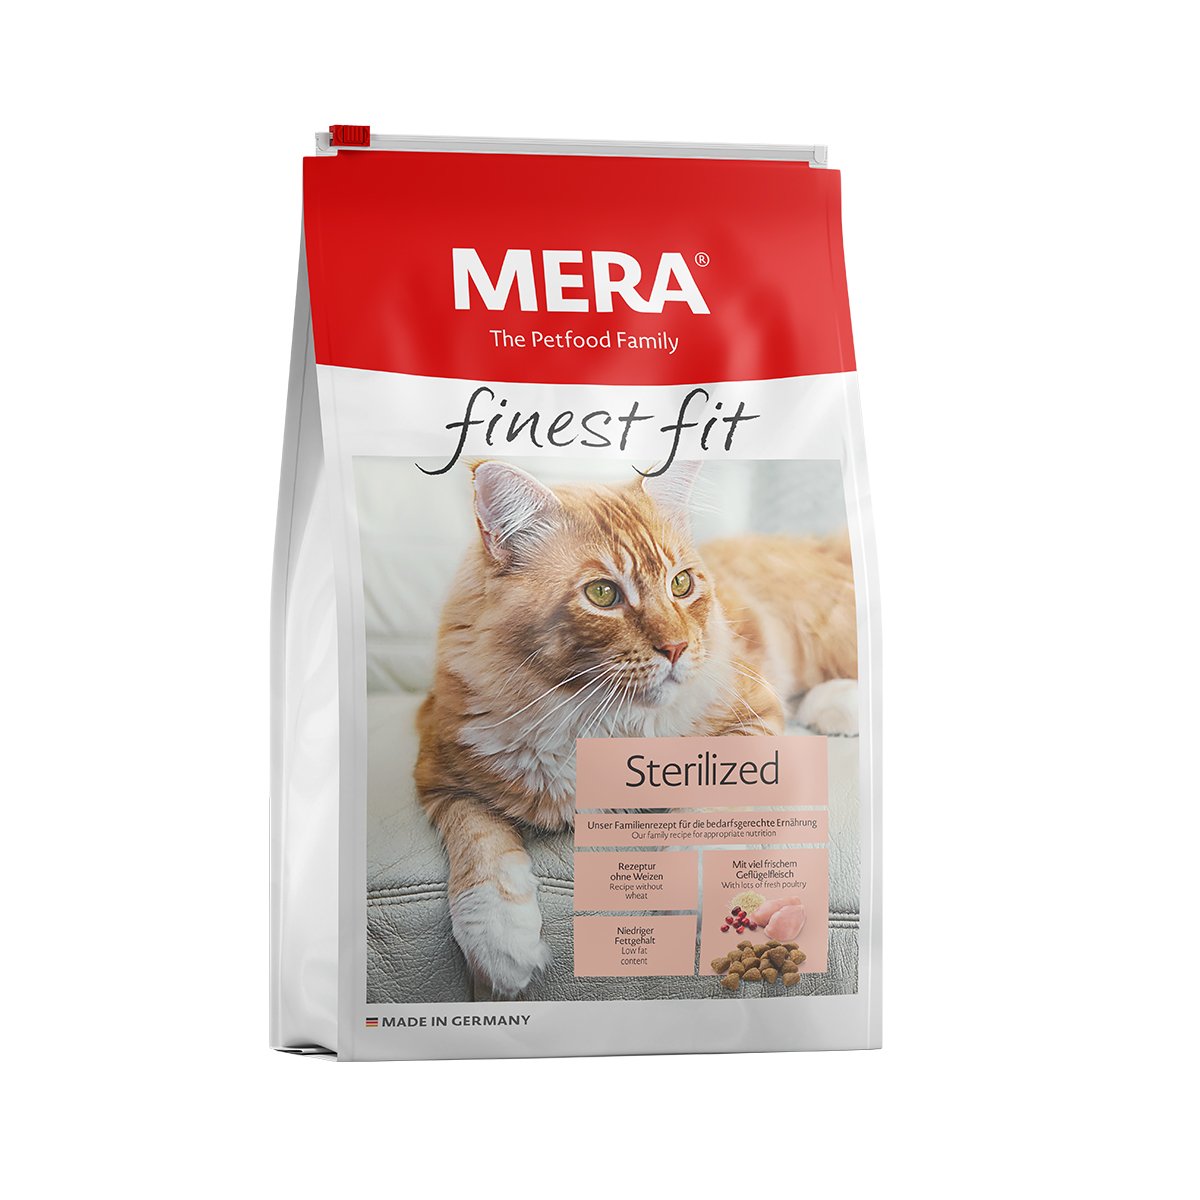 MERA finest fit Trockenfutter Sterilized 2x10kg